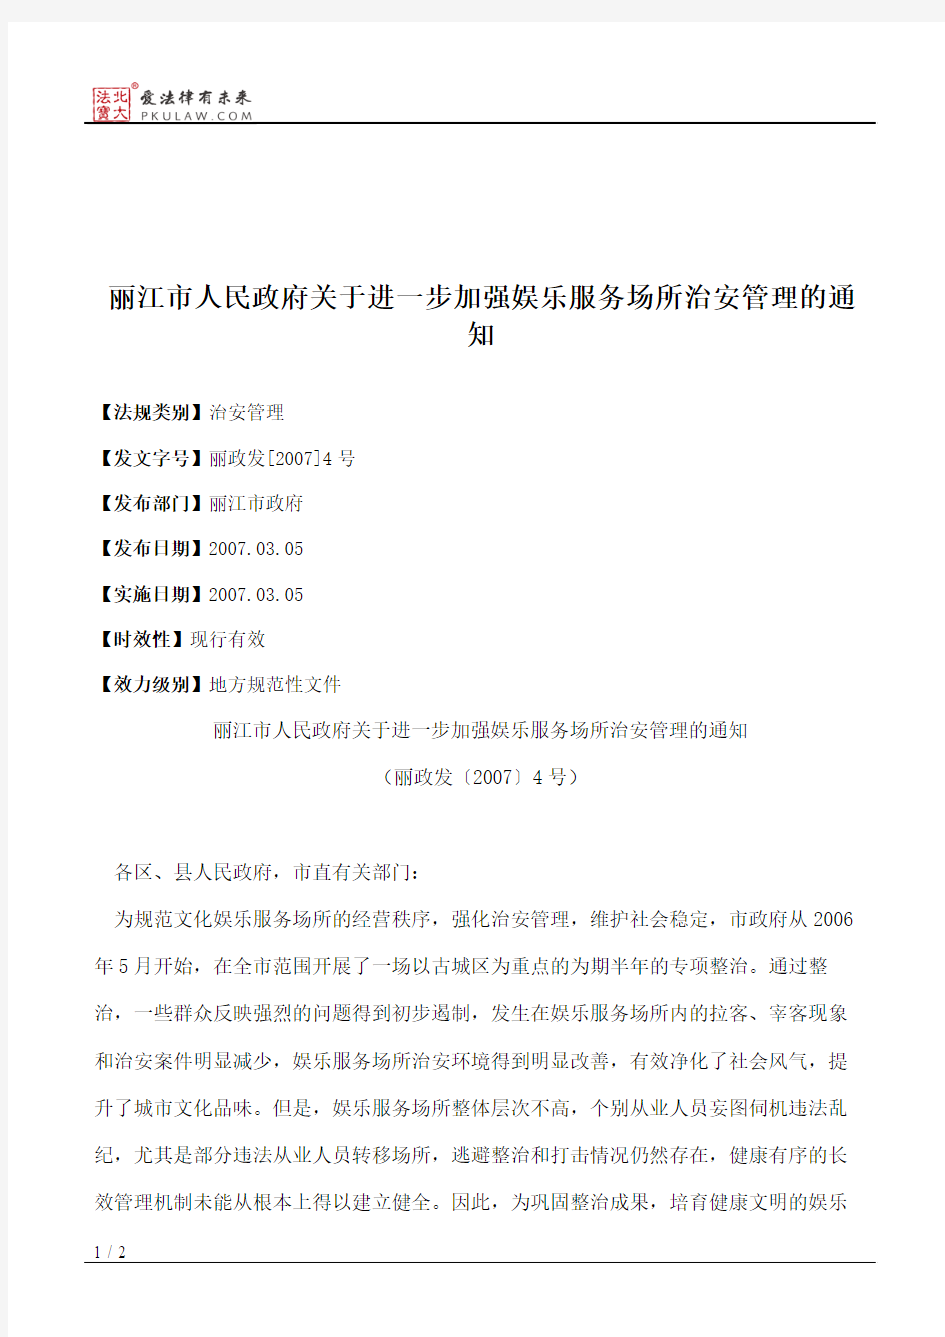 丽江市人民政府关于进一步加强娱乐服务场所治安管理的通知